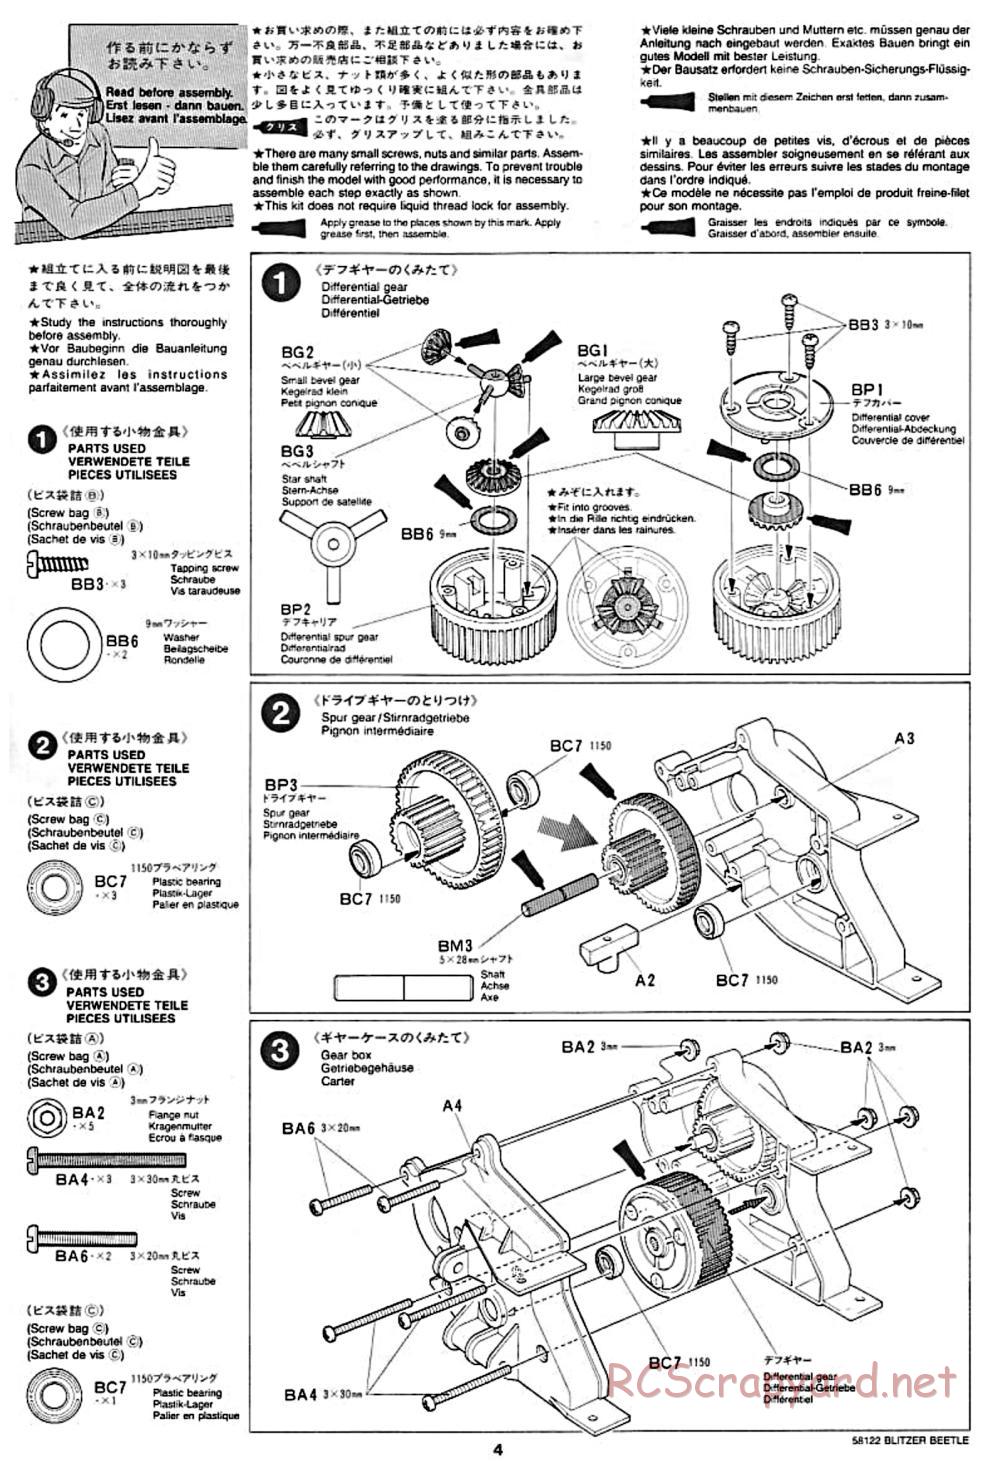 Tamiya - Blitzer Beetle Chassis - Manual - Page 4